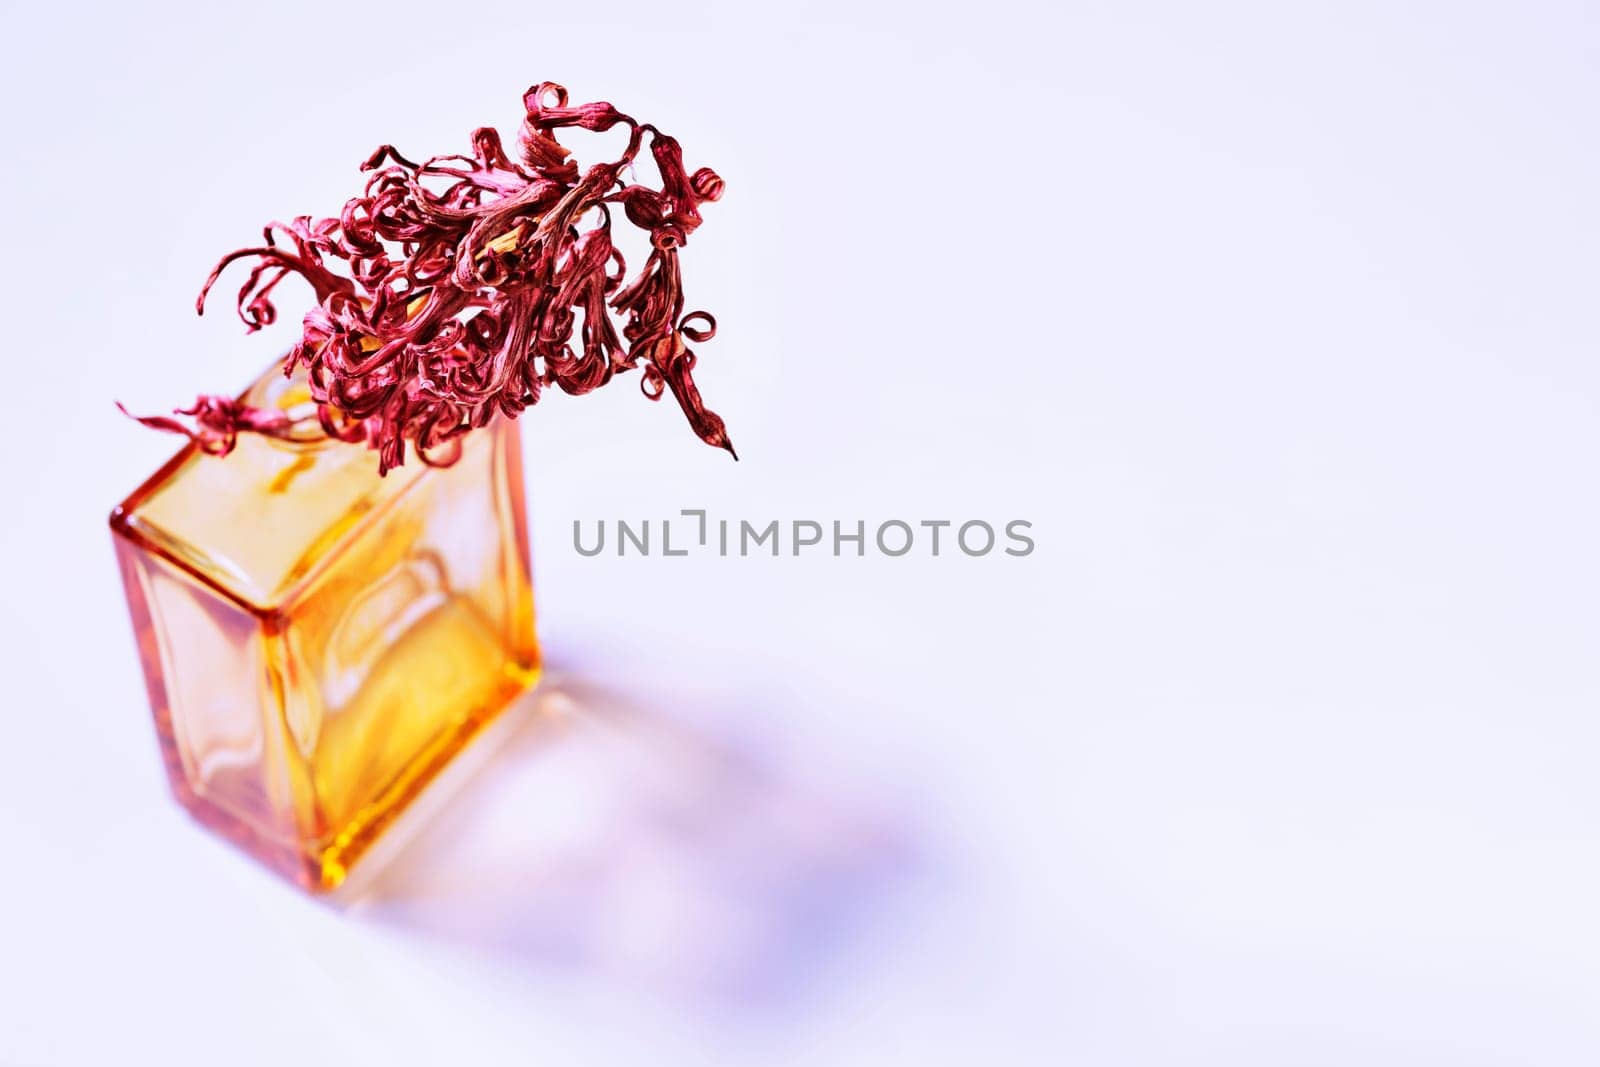  Red dried flowers in vase  by victimewalker